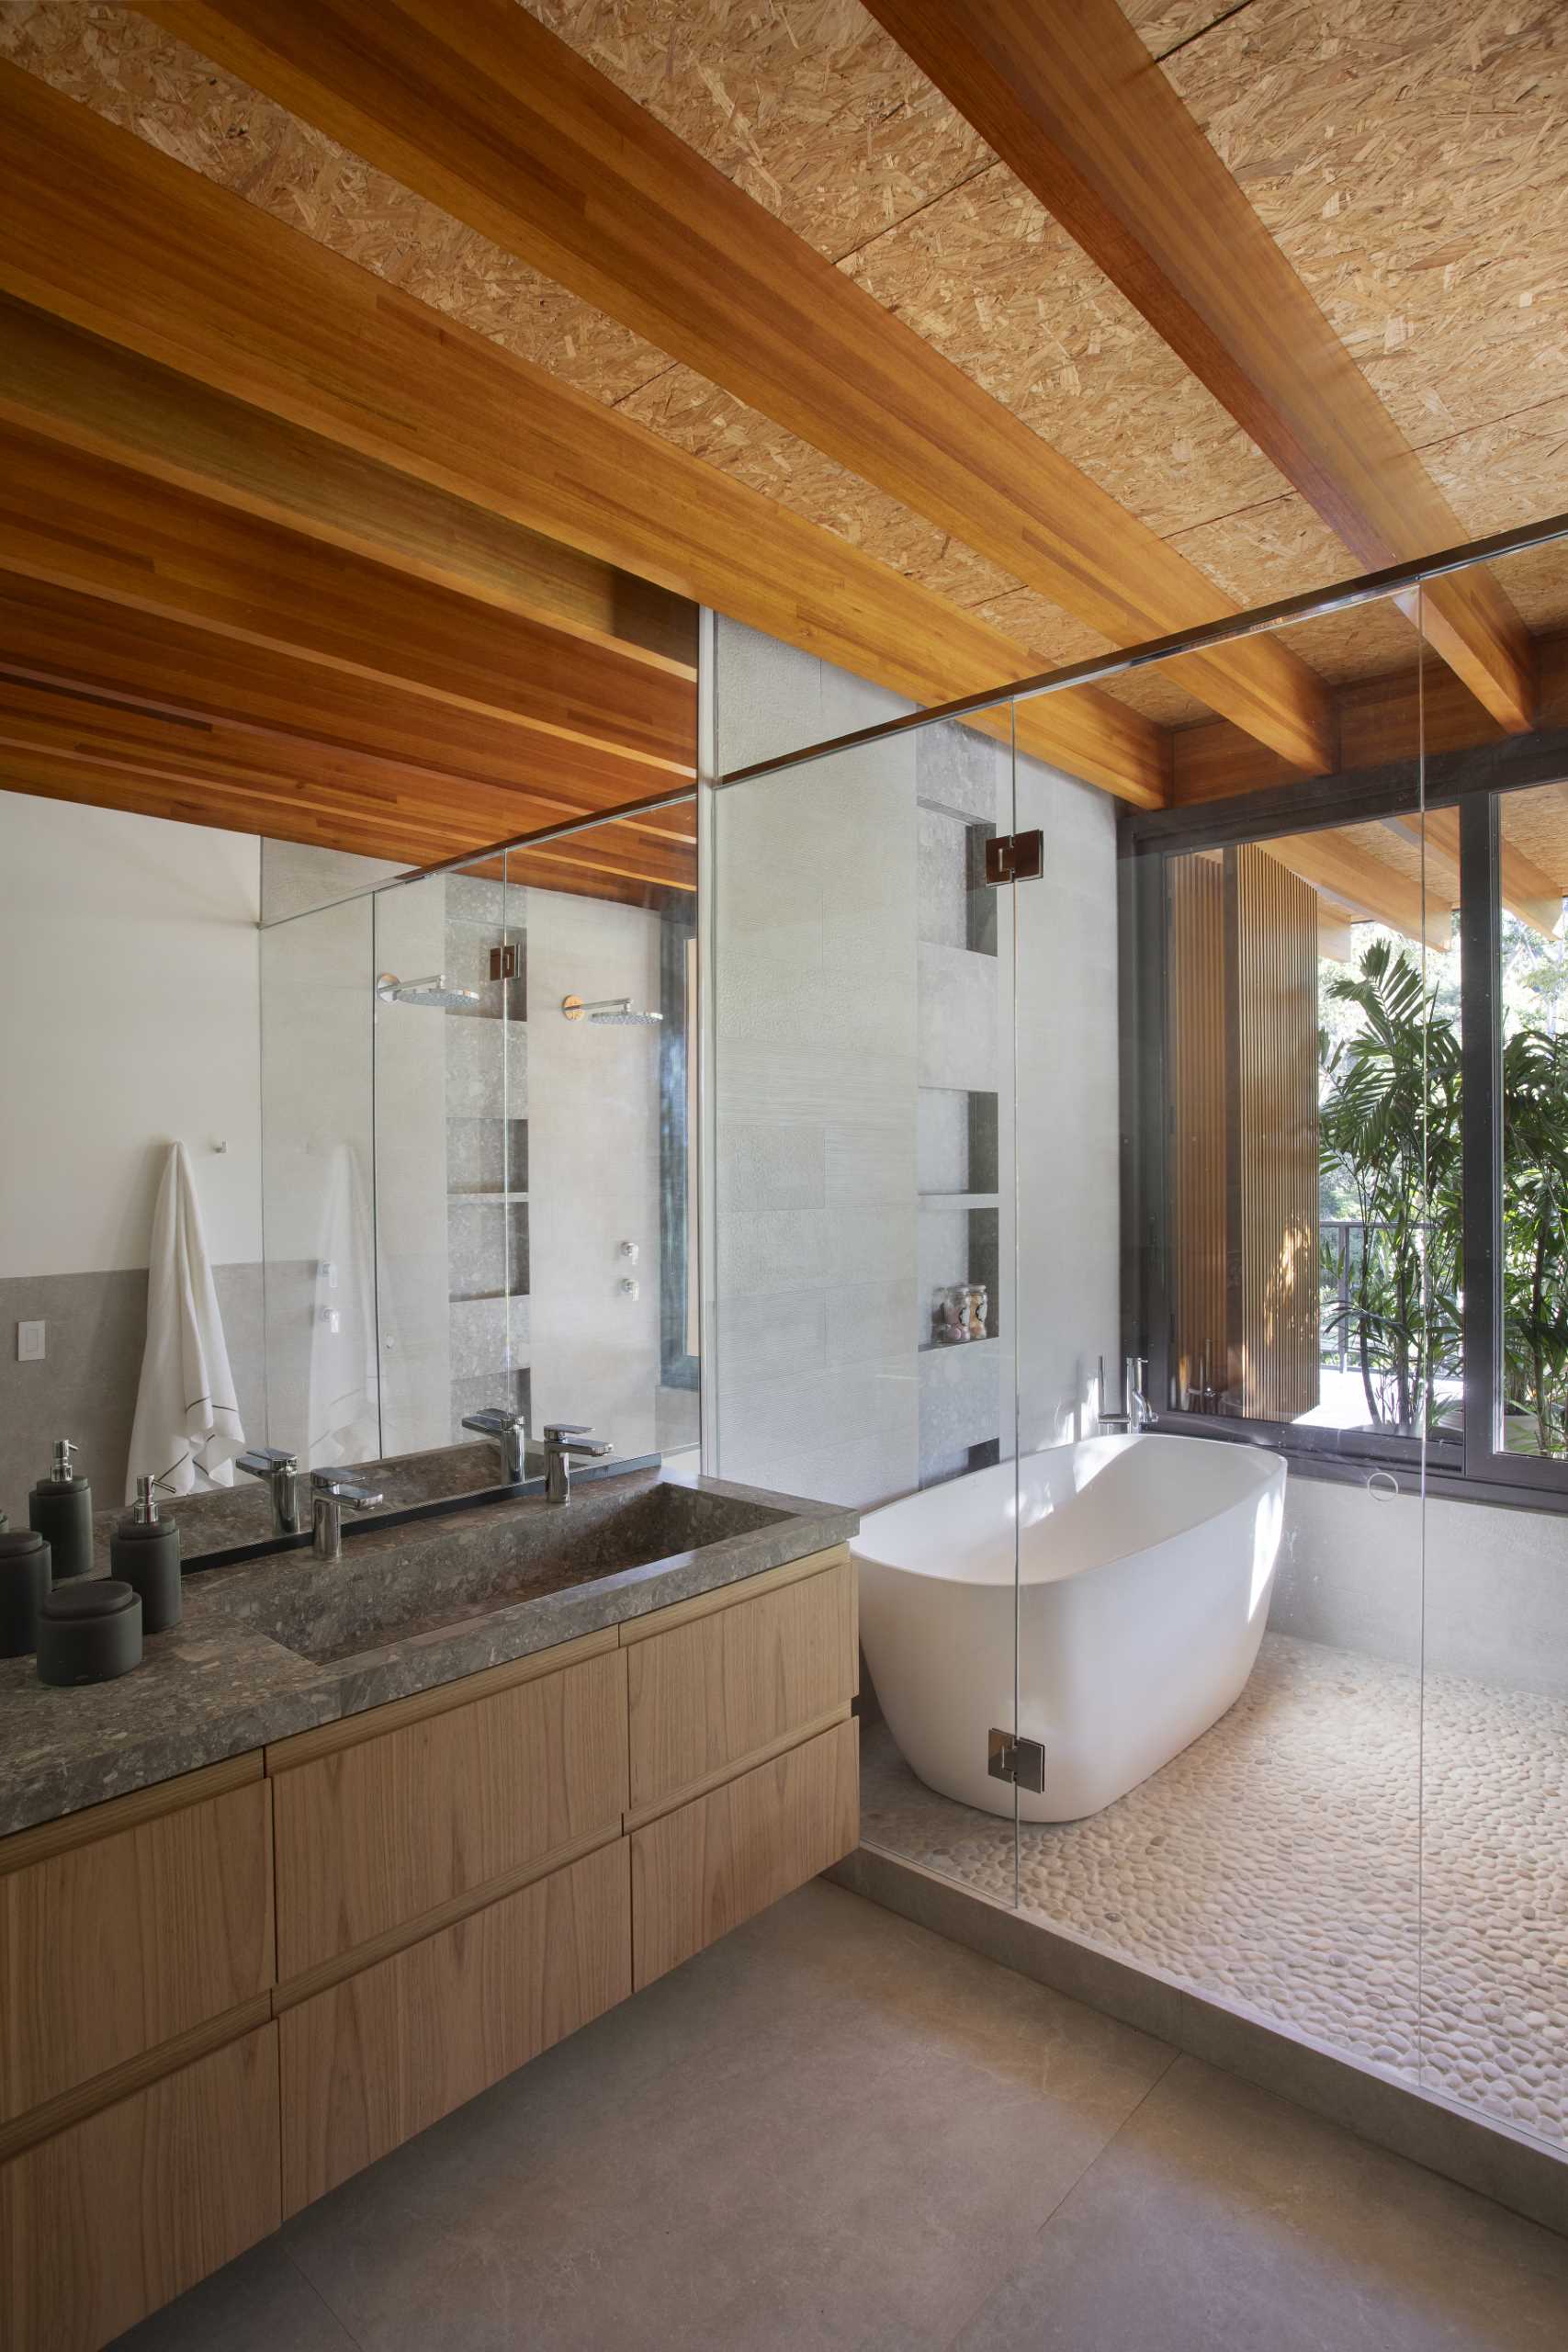 În această baie modernă, există o cameră umedă care include o cadă de sine stătătoare, duș și nișe pentru rafturi.